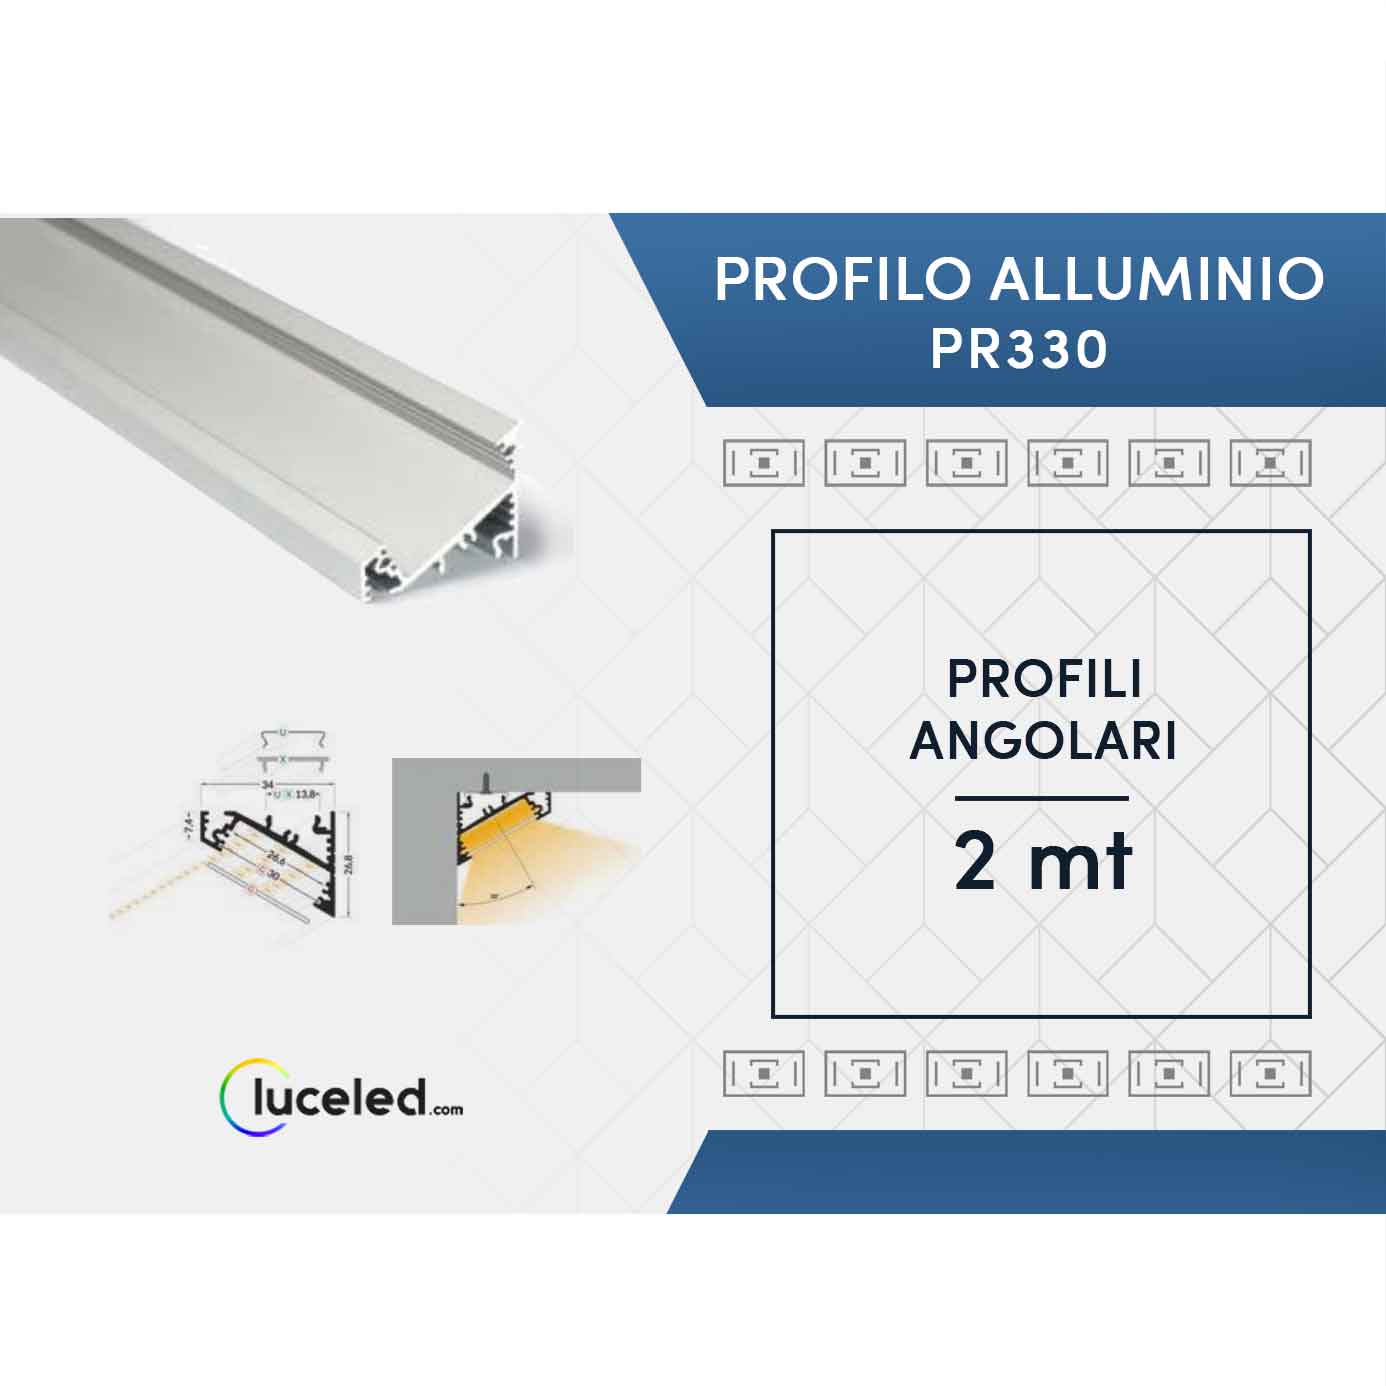 Ledco pr330 kit profilo angolare in alluminio 10 metri per strisce led